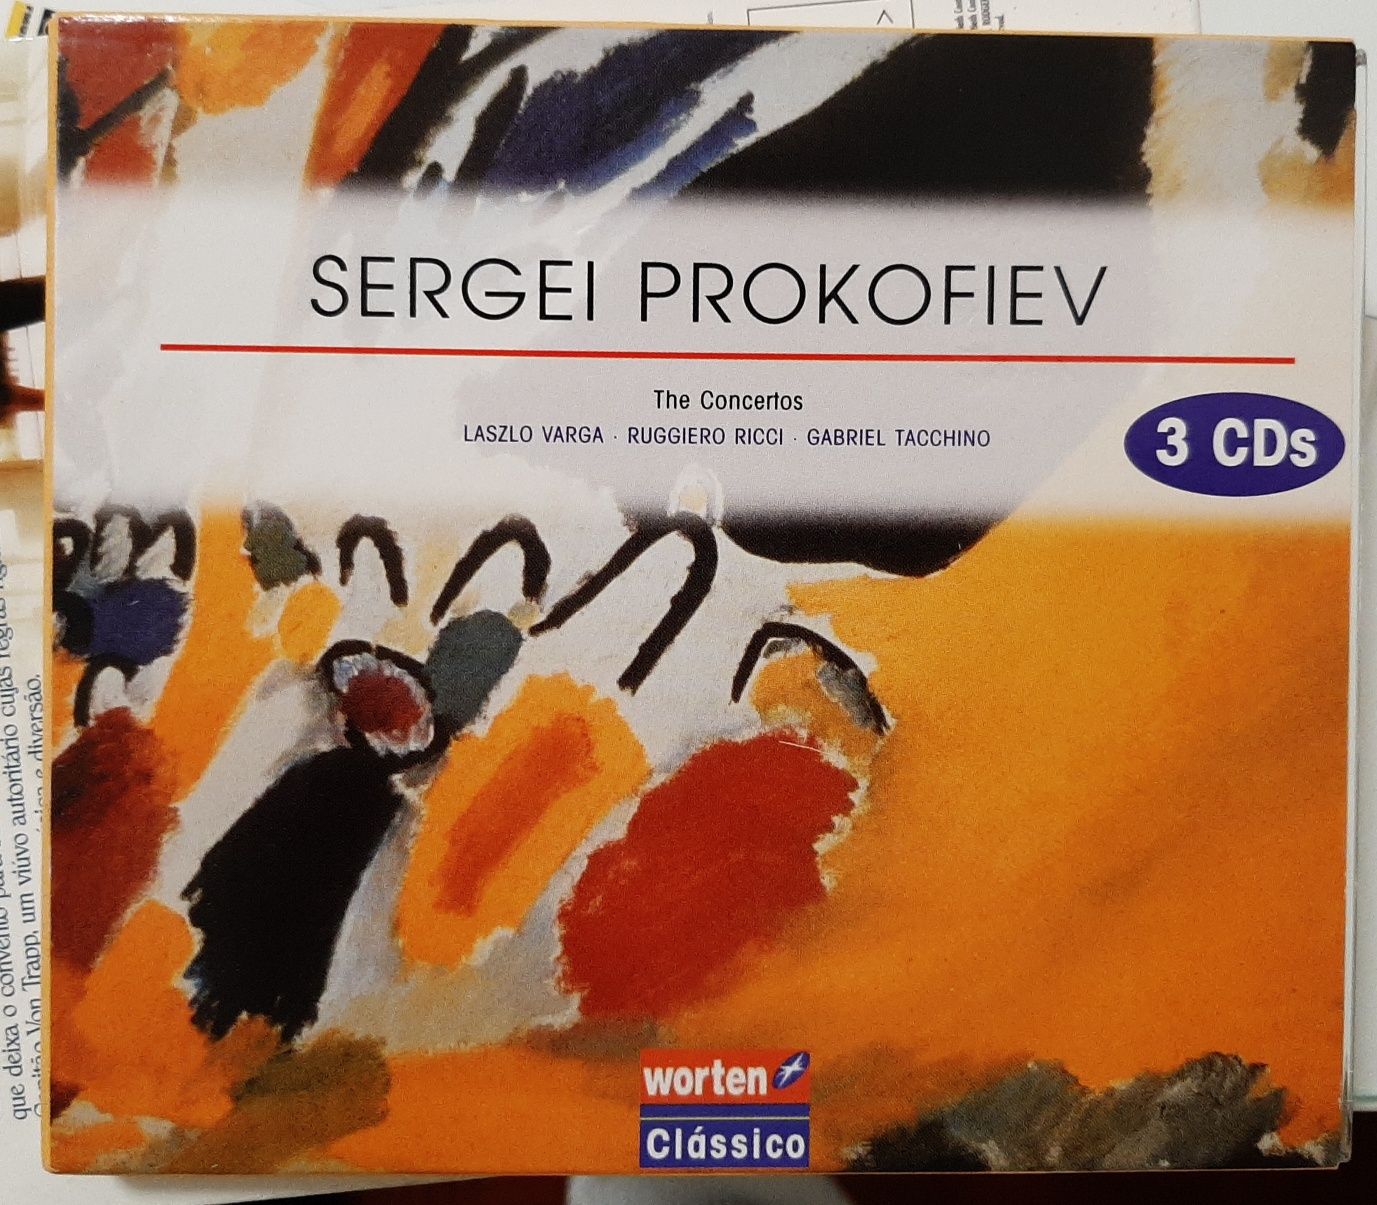 3 CDs de Sergei Prokofiev